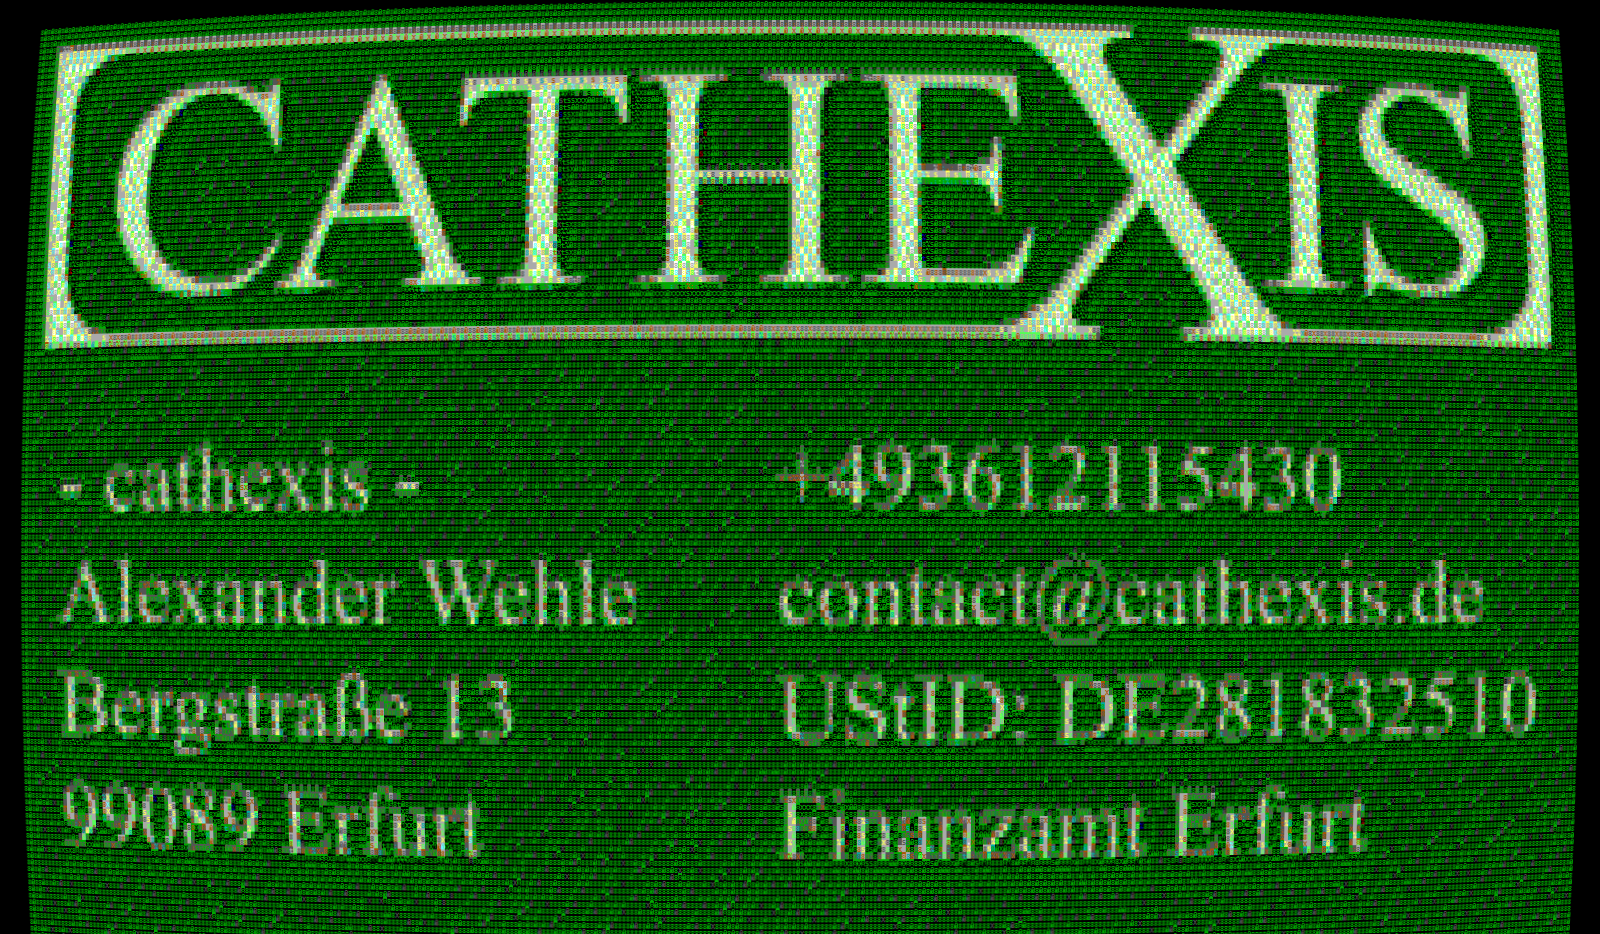 - cathexis - Alexander Wehle Bergstraße 13 99089 Erfurt +493612115430 contact@cathexis.de UStID: DE281832510 Finanzamt Erfurt